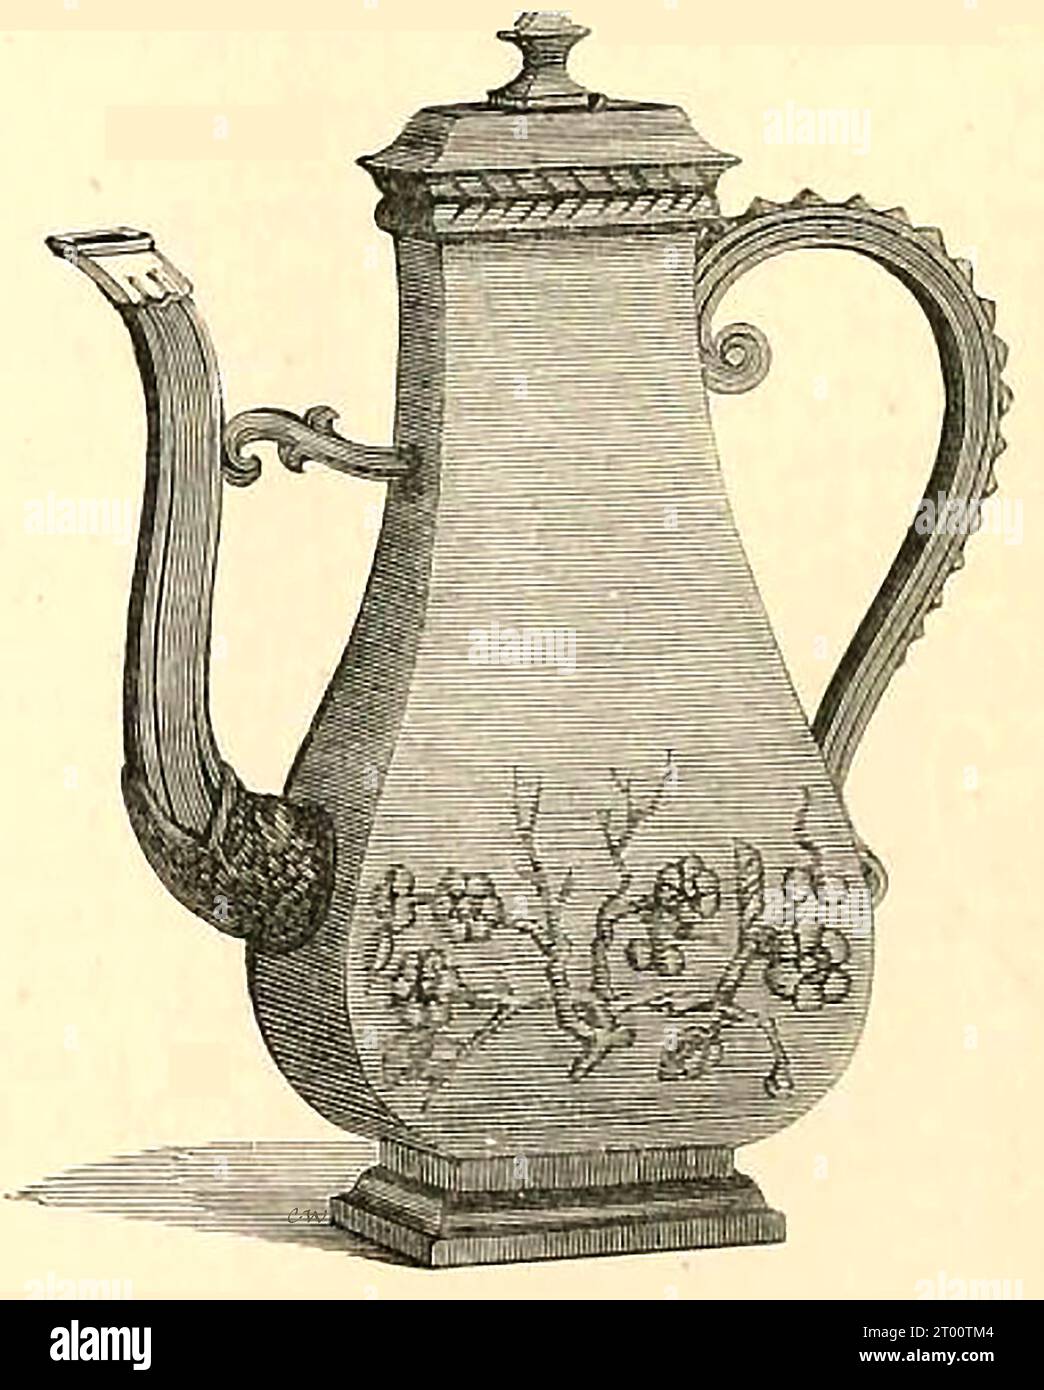 Ein Stich aus dem 19. Jahrhundert mit einem Beispiel einer Bottcher Ware Kaffeekanne - ein Stich aus dem 19. Jahrhundert, der ein Beispiel einer Bottcher Ware-Kaffeekanne zeigt – Stockfoto